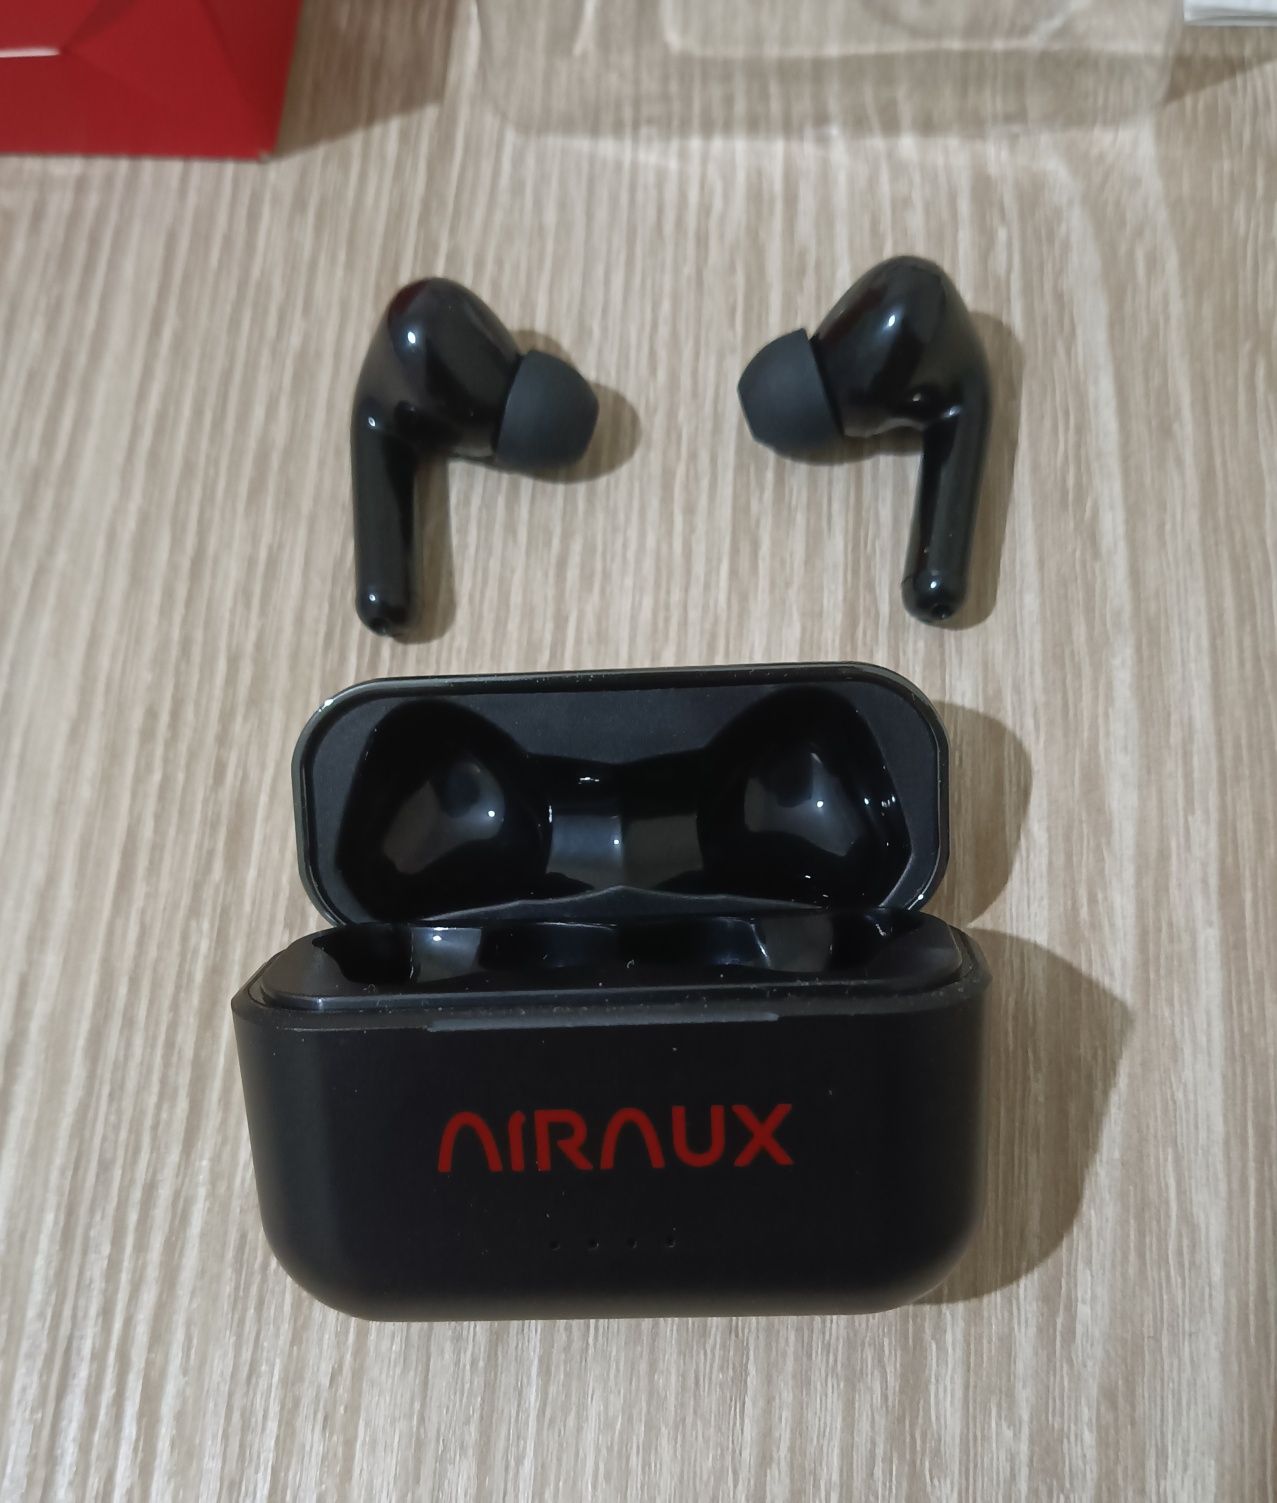 Fones AirAux - Como novos, com caixa e acessórios